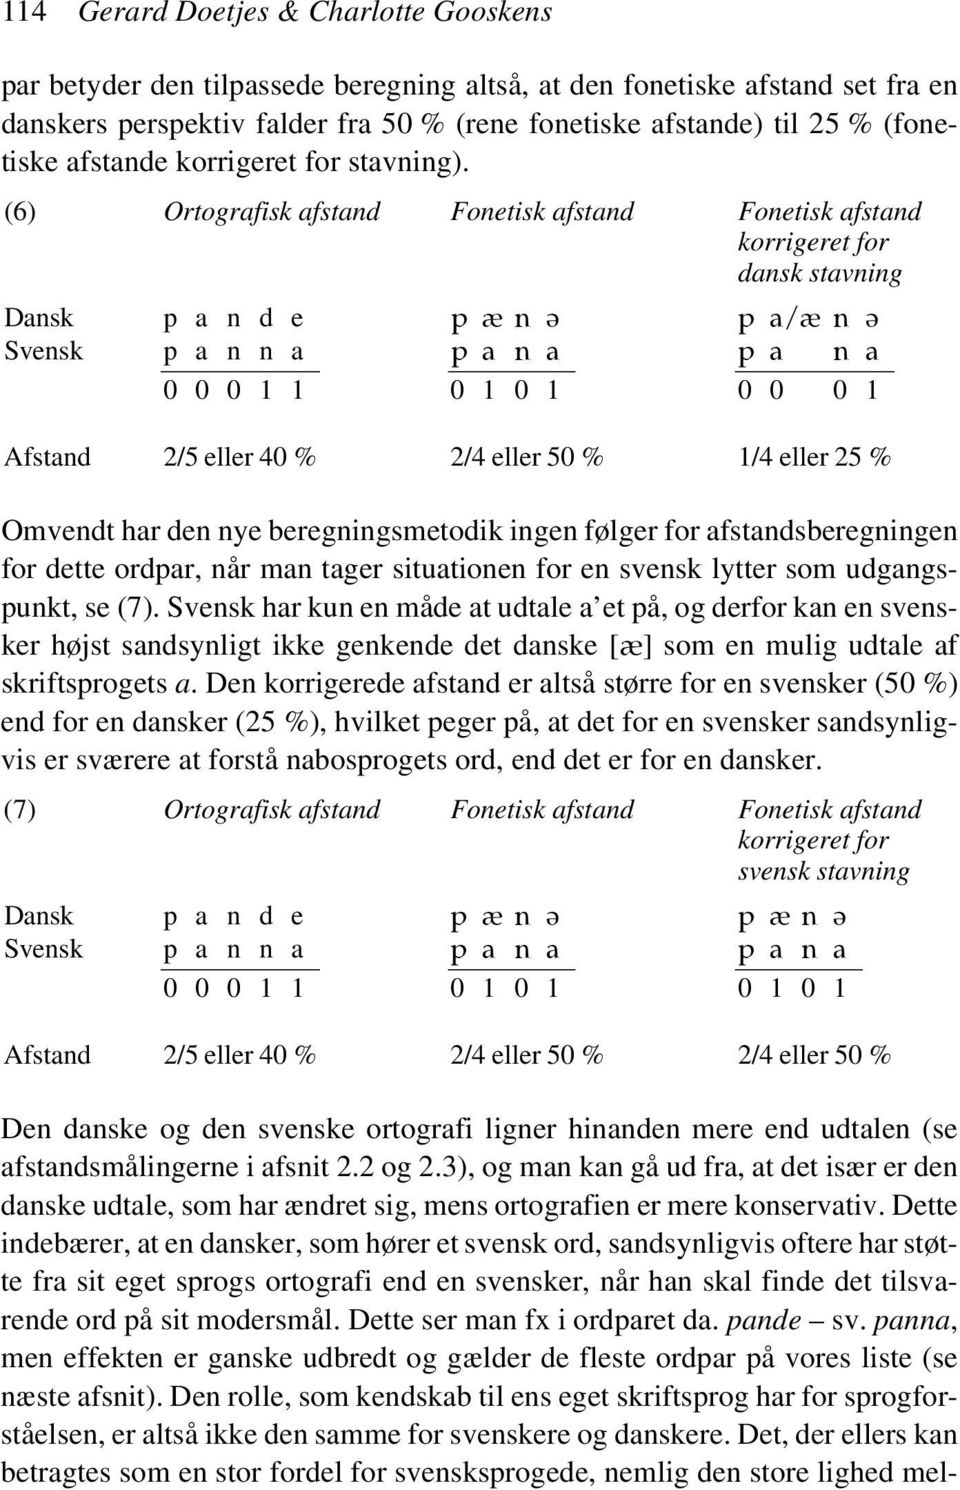 (6) Ortografisk afstand Fonetisk afstand Fonetisk afstand korrigeret for dansk stavning Dansk p a n d e p æ n \ p a/æ n \ Svensk p a n n a p a n a p a n a 0 0 0 1 1 0 1 0 1 0 0 0 1 Afstand 2/5 eller